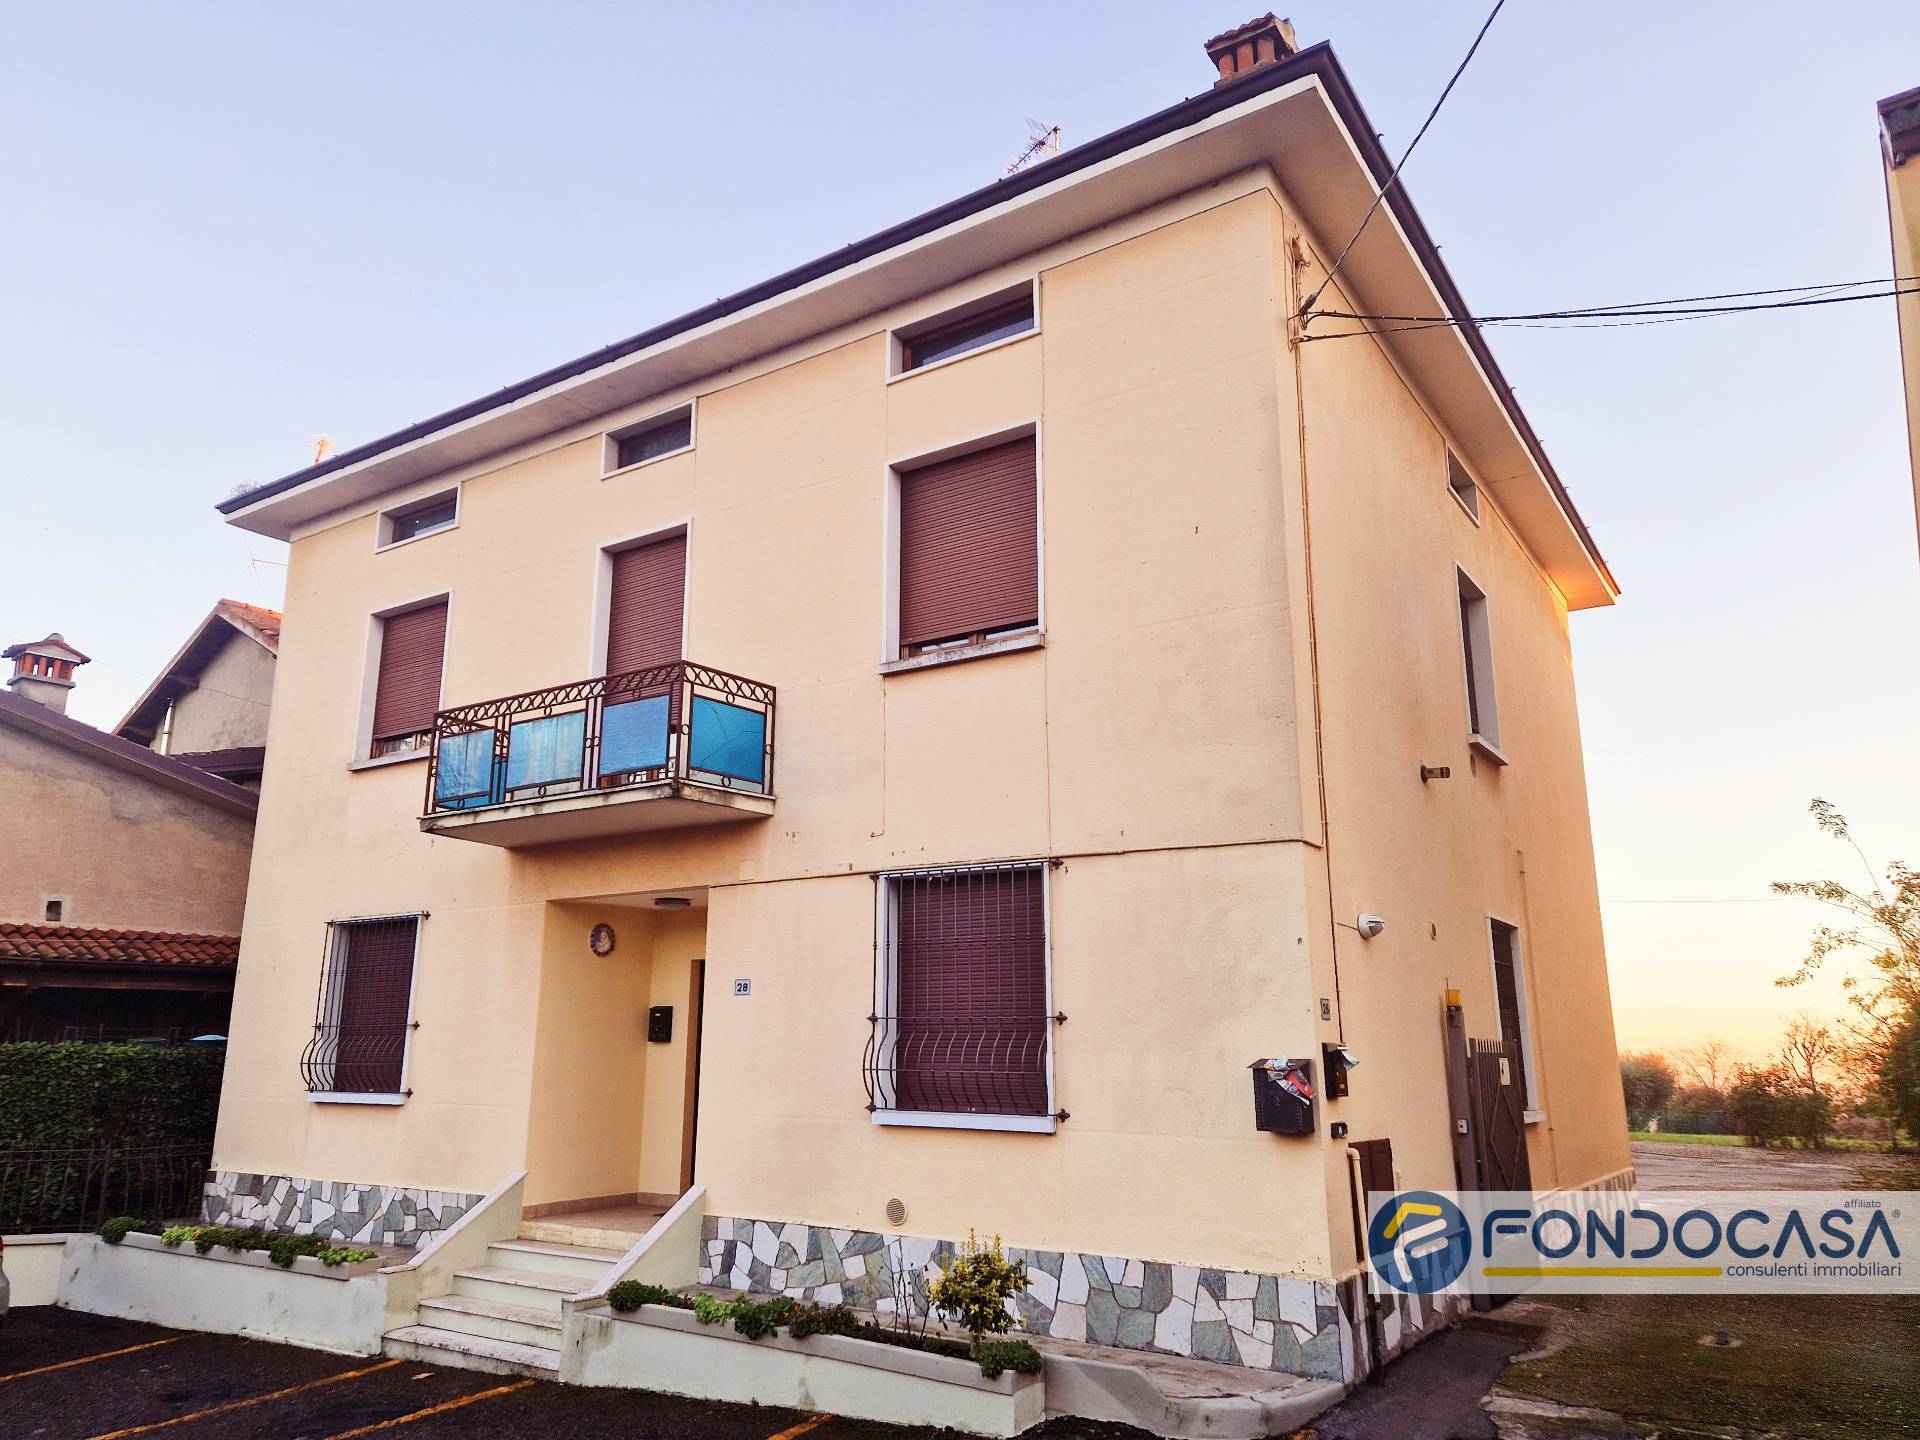 Appartamento in vendita a Cazzago San Martino, 4 locali, zona ato, prezzo € 158.000 | PortaleAgenzieImmobiliari.it